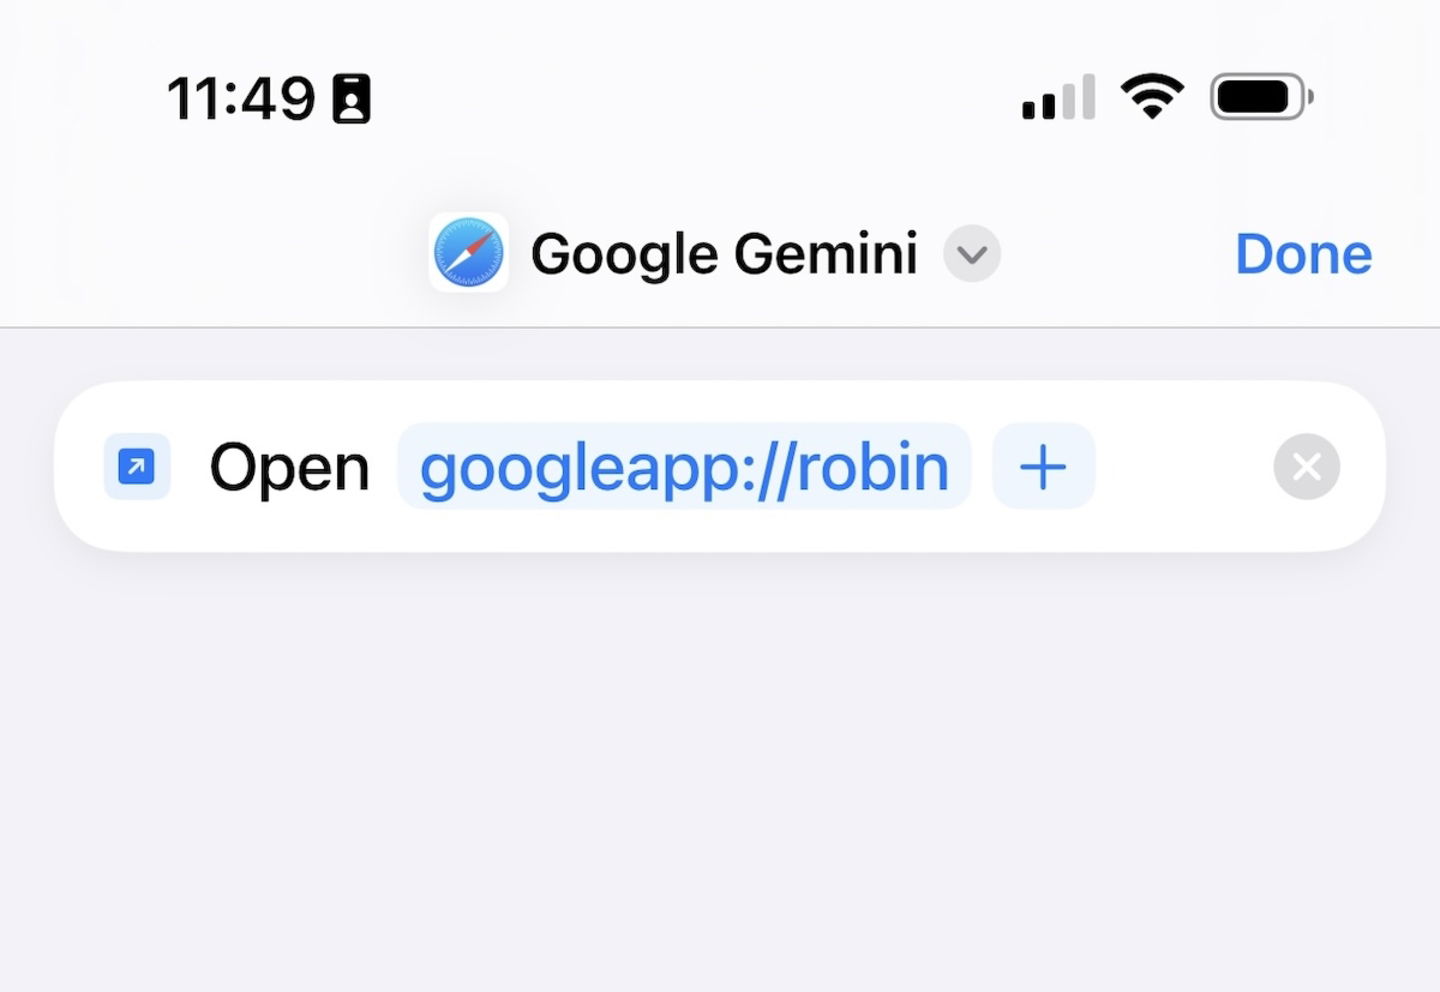 Atajo de Google Gemini